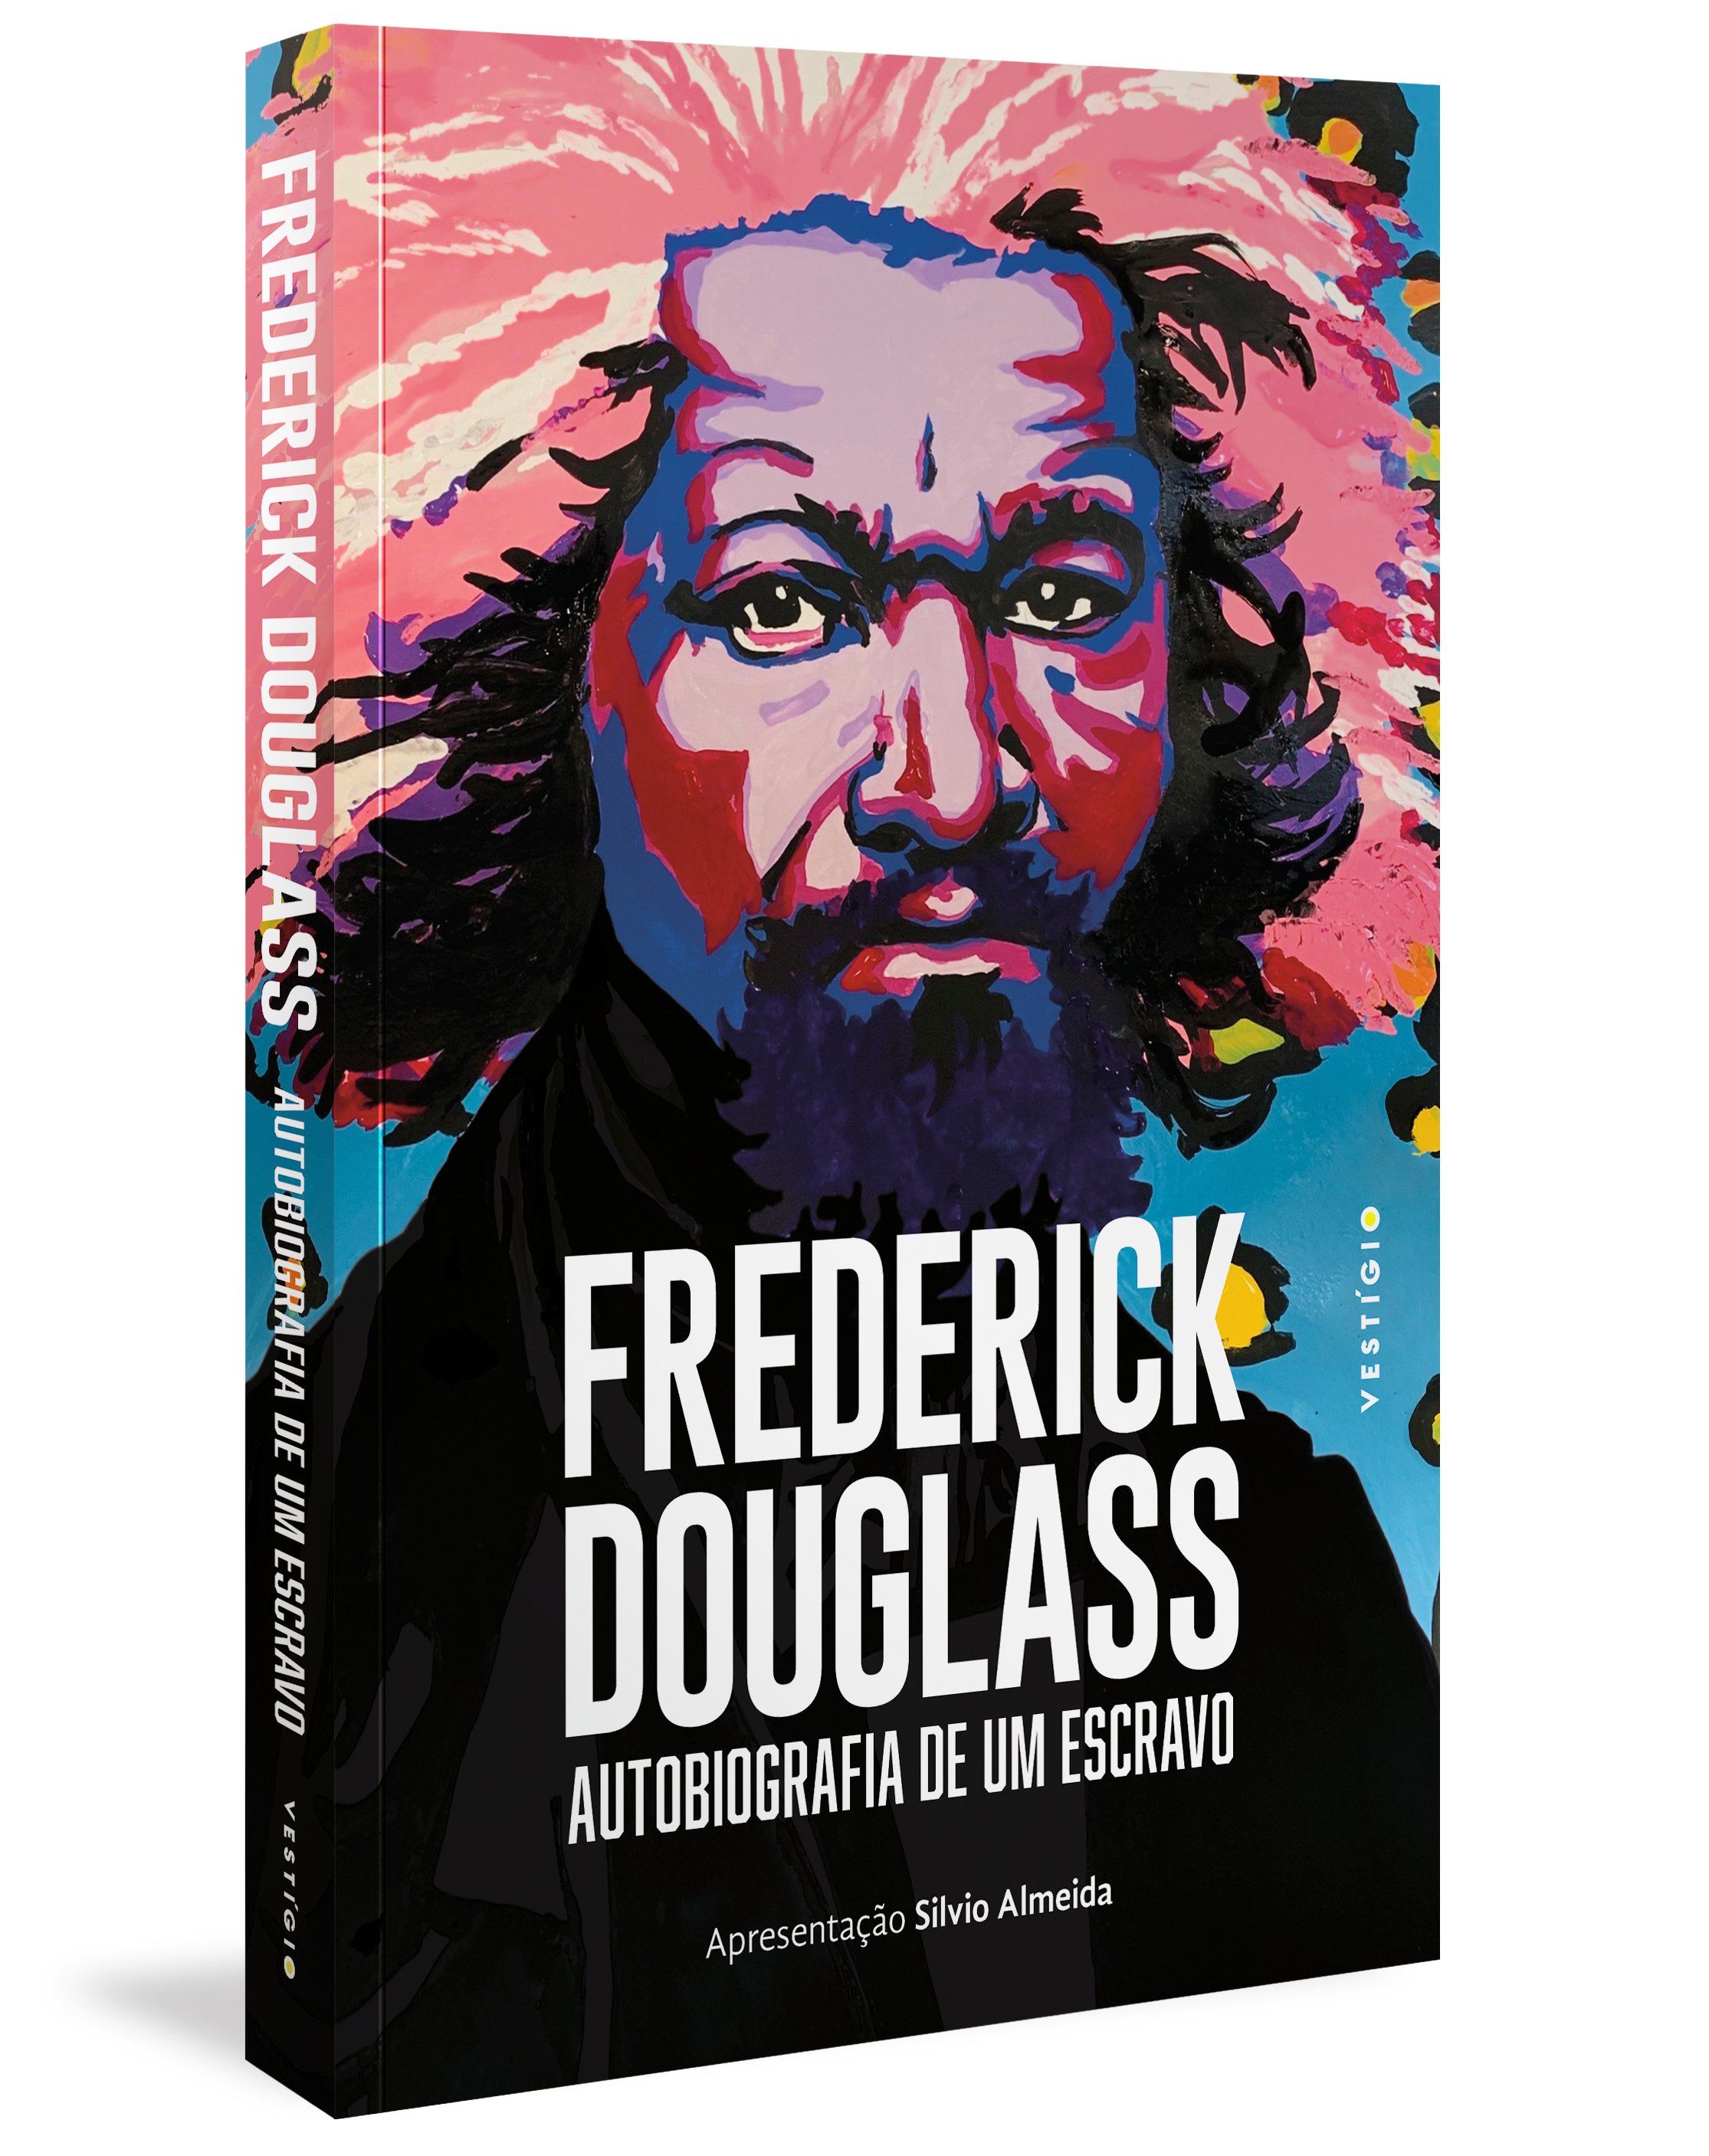 Frederick Douglass: Autobiografia de um Escravo